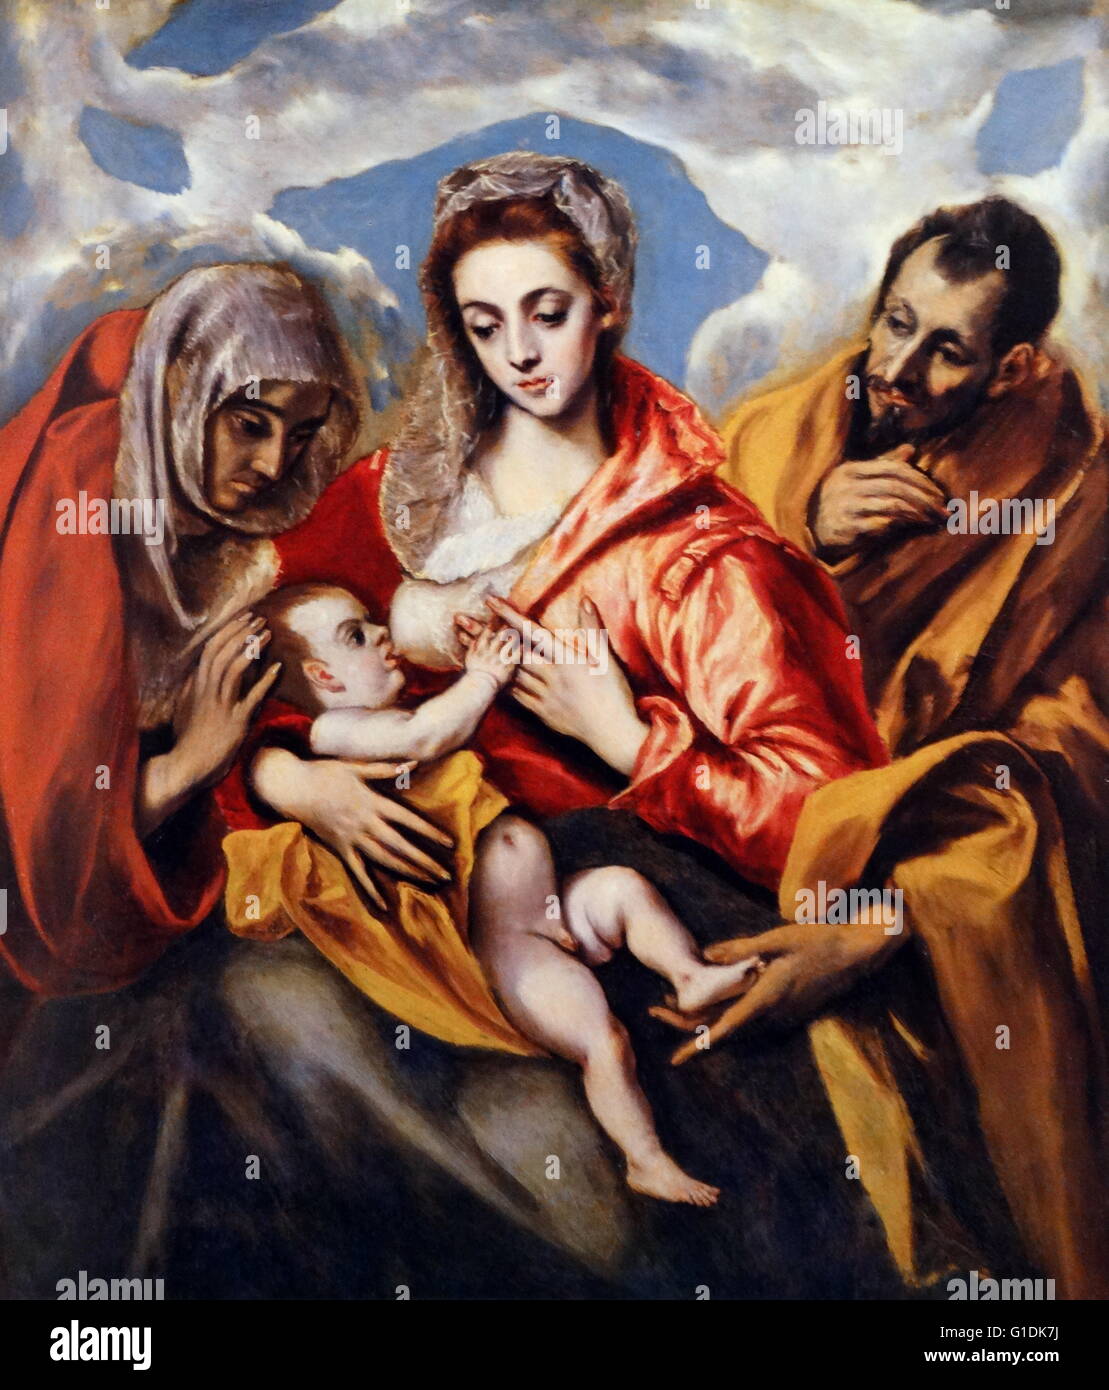 Gemälde der Heiligen Familie mit St. Anna von El Greco (1541-1614) Maler, Bildhauer und Architekt der spanischen Renaissance. Datiert aus dem 16. Jahrhundert Stockfoto